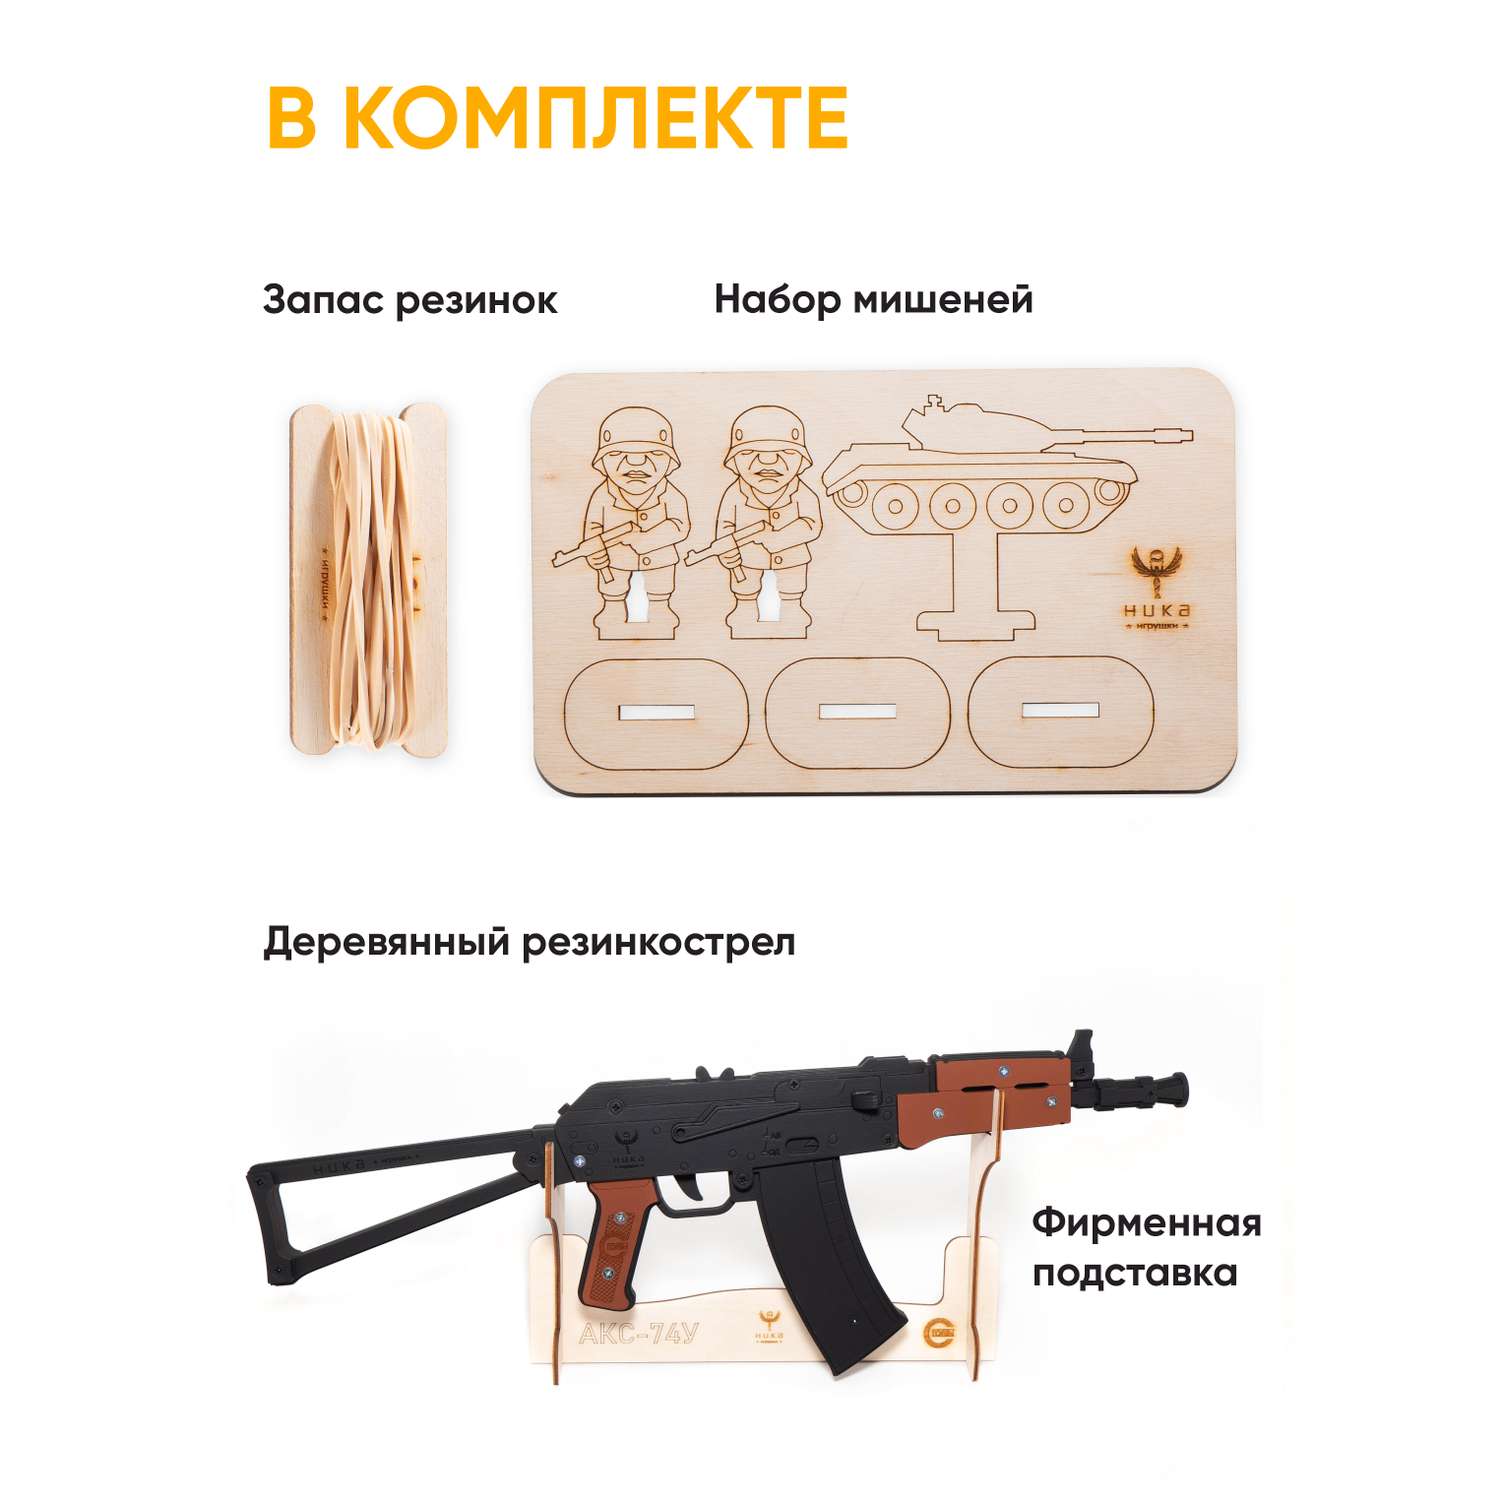 Резинкострел НИКА игрушки Автомат АКС-74У в подарочной упаковке - фото 3